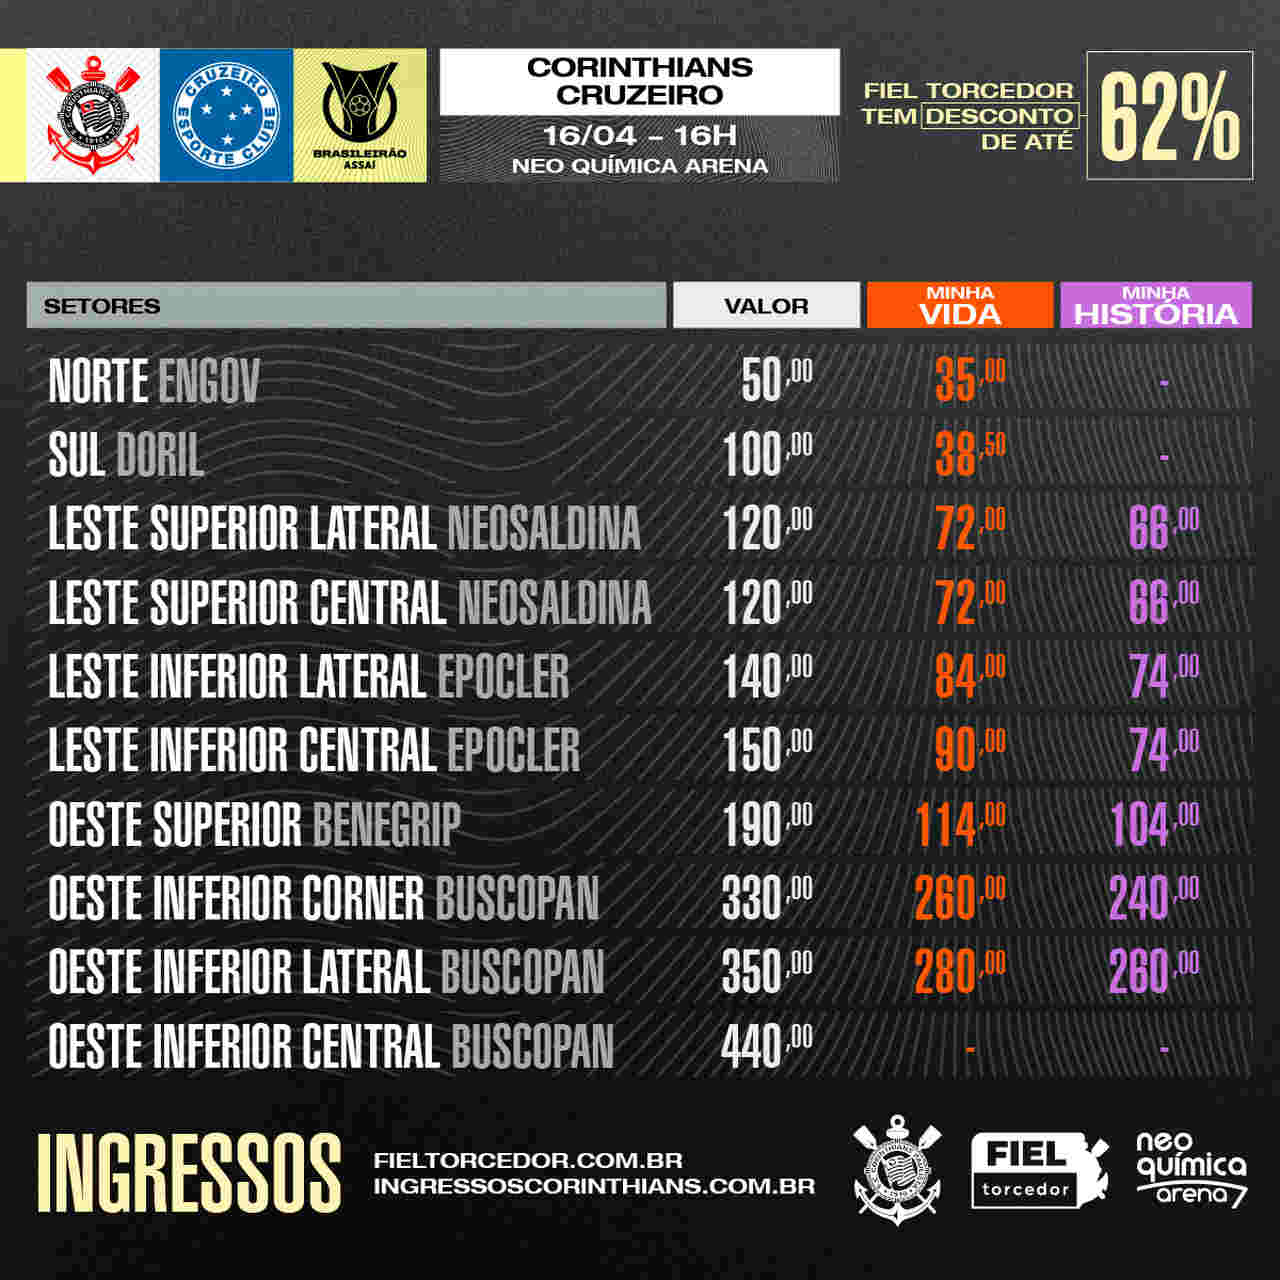 Corinthians x Cruzeiro - Ingressos